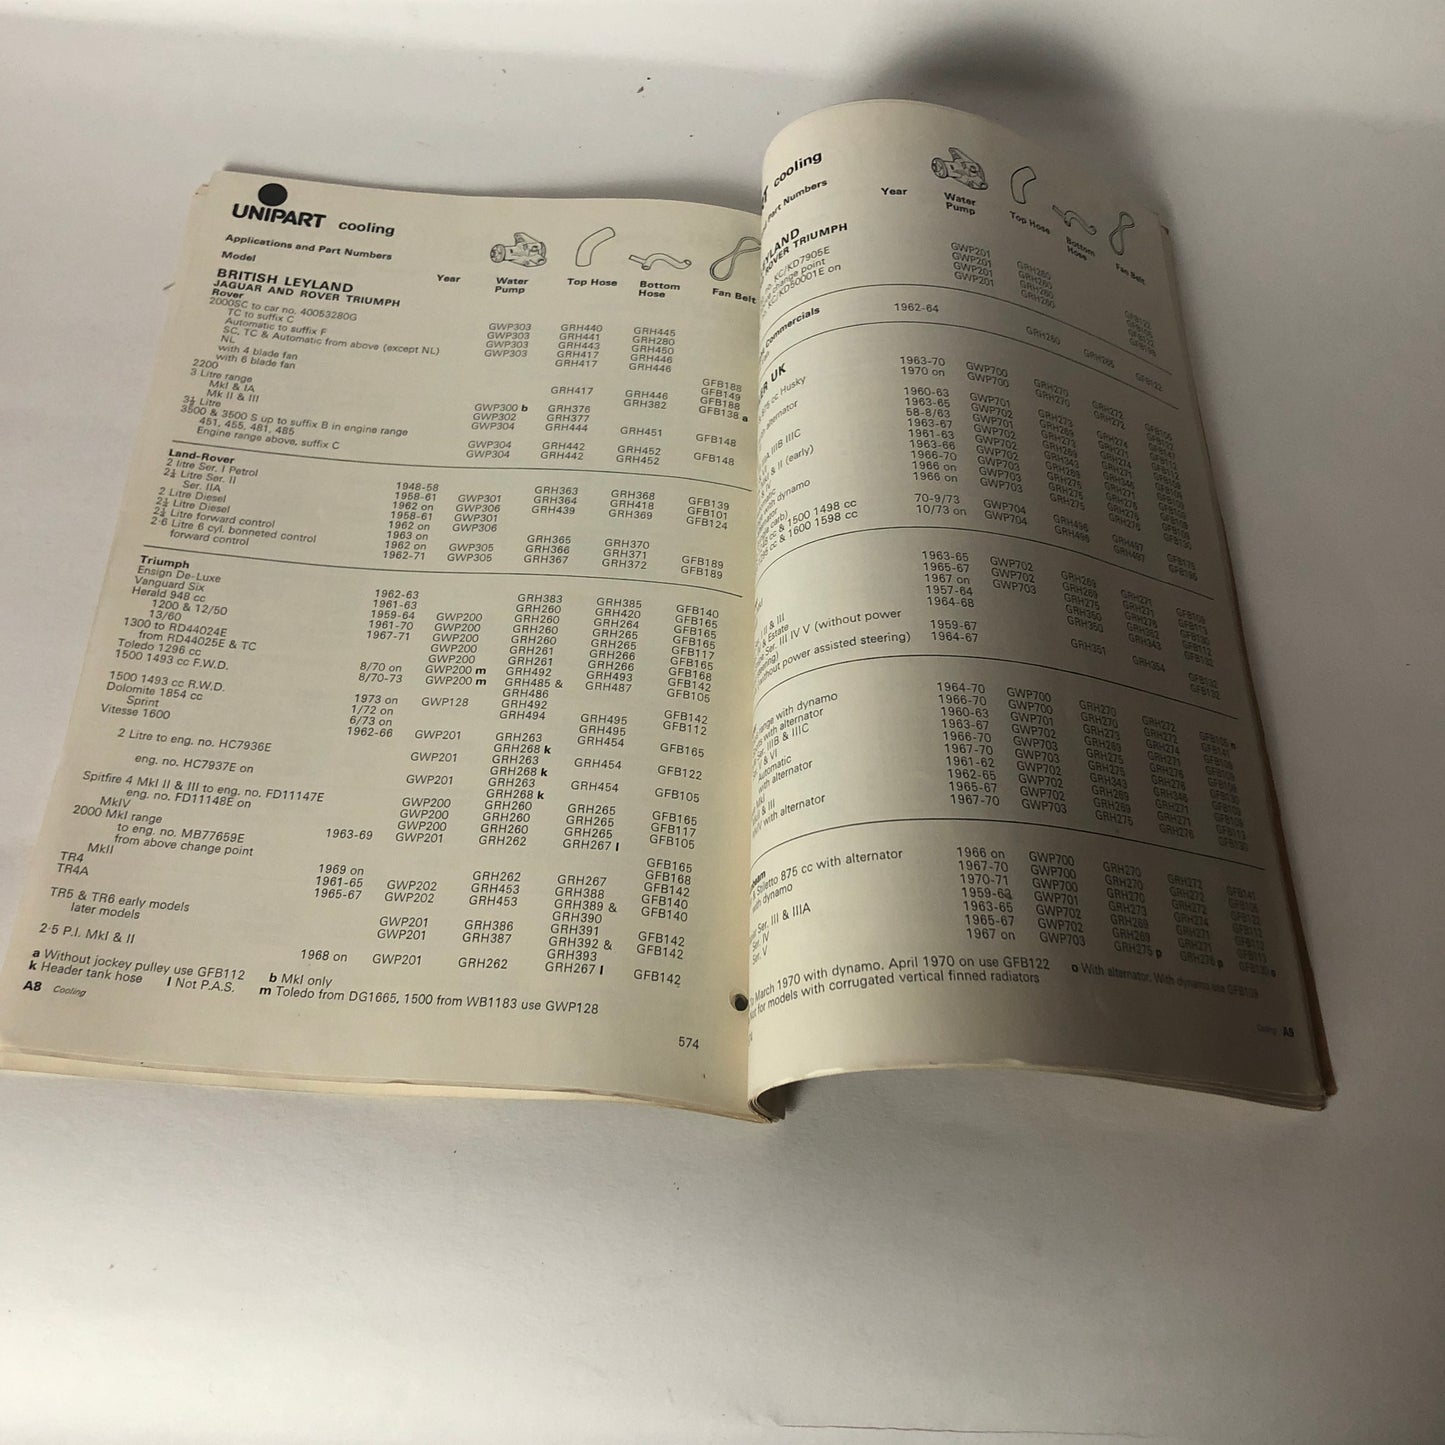 Leyland Innocenti, Catalogo Ricambi e Listino Prezzi Unipart Anno 1973 n.198 Anno 1973